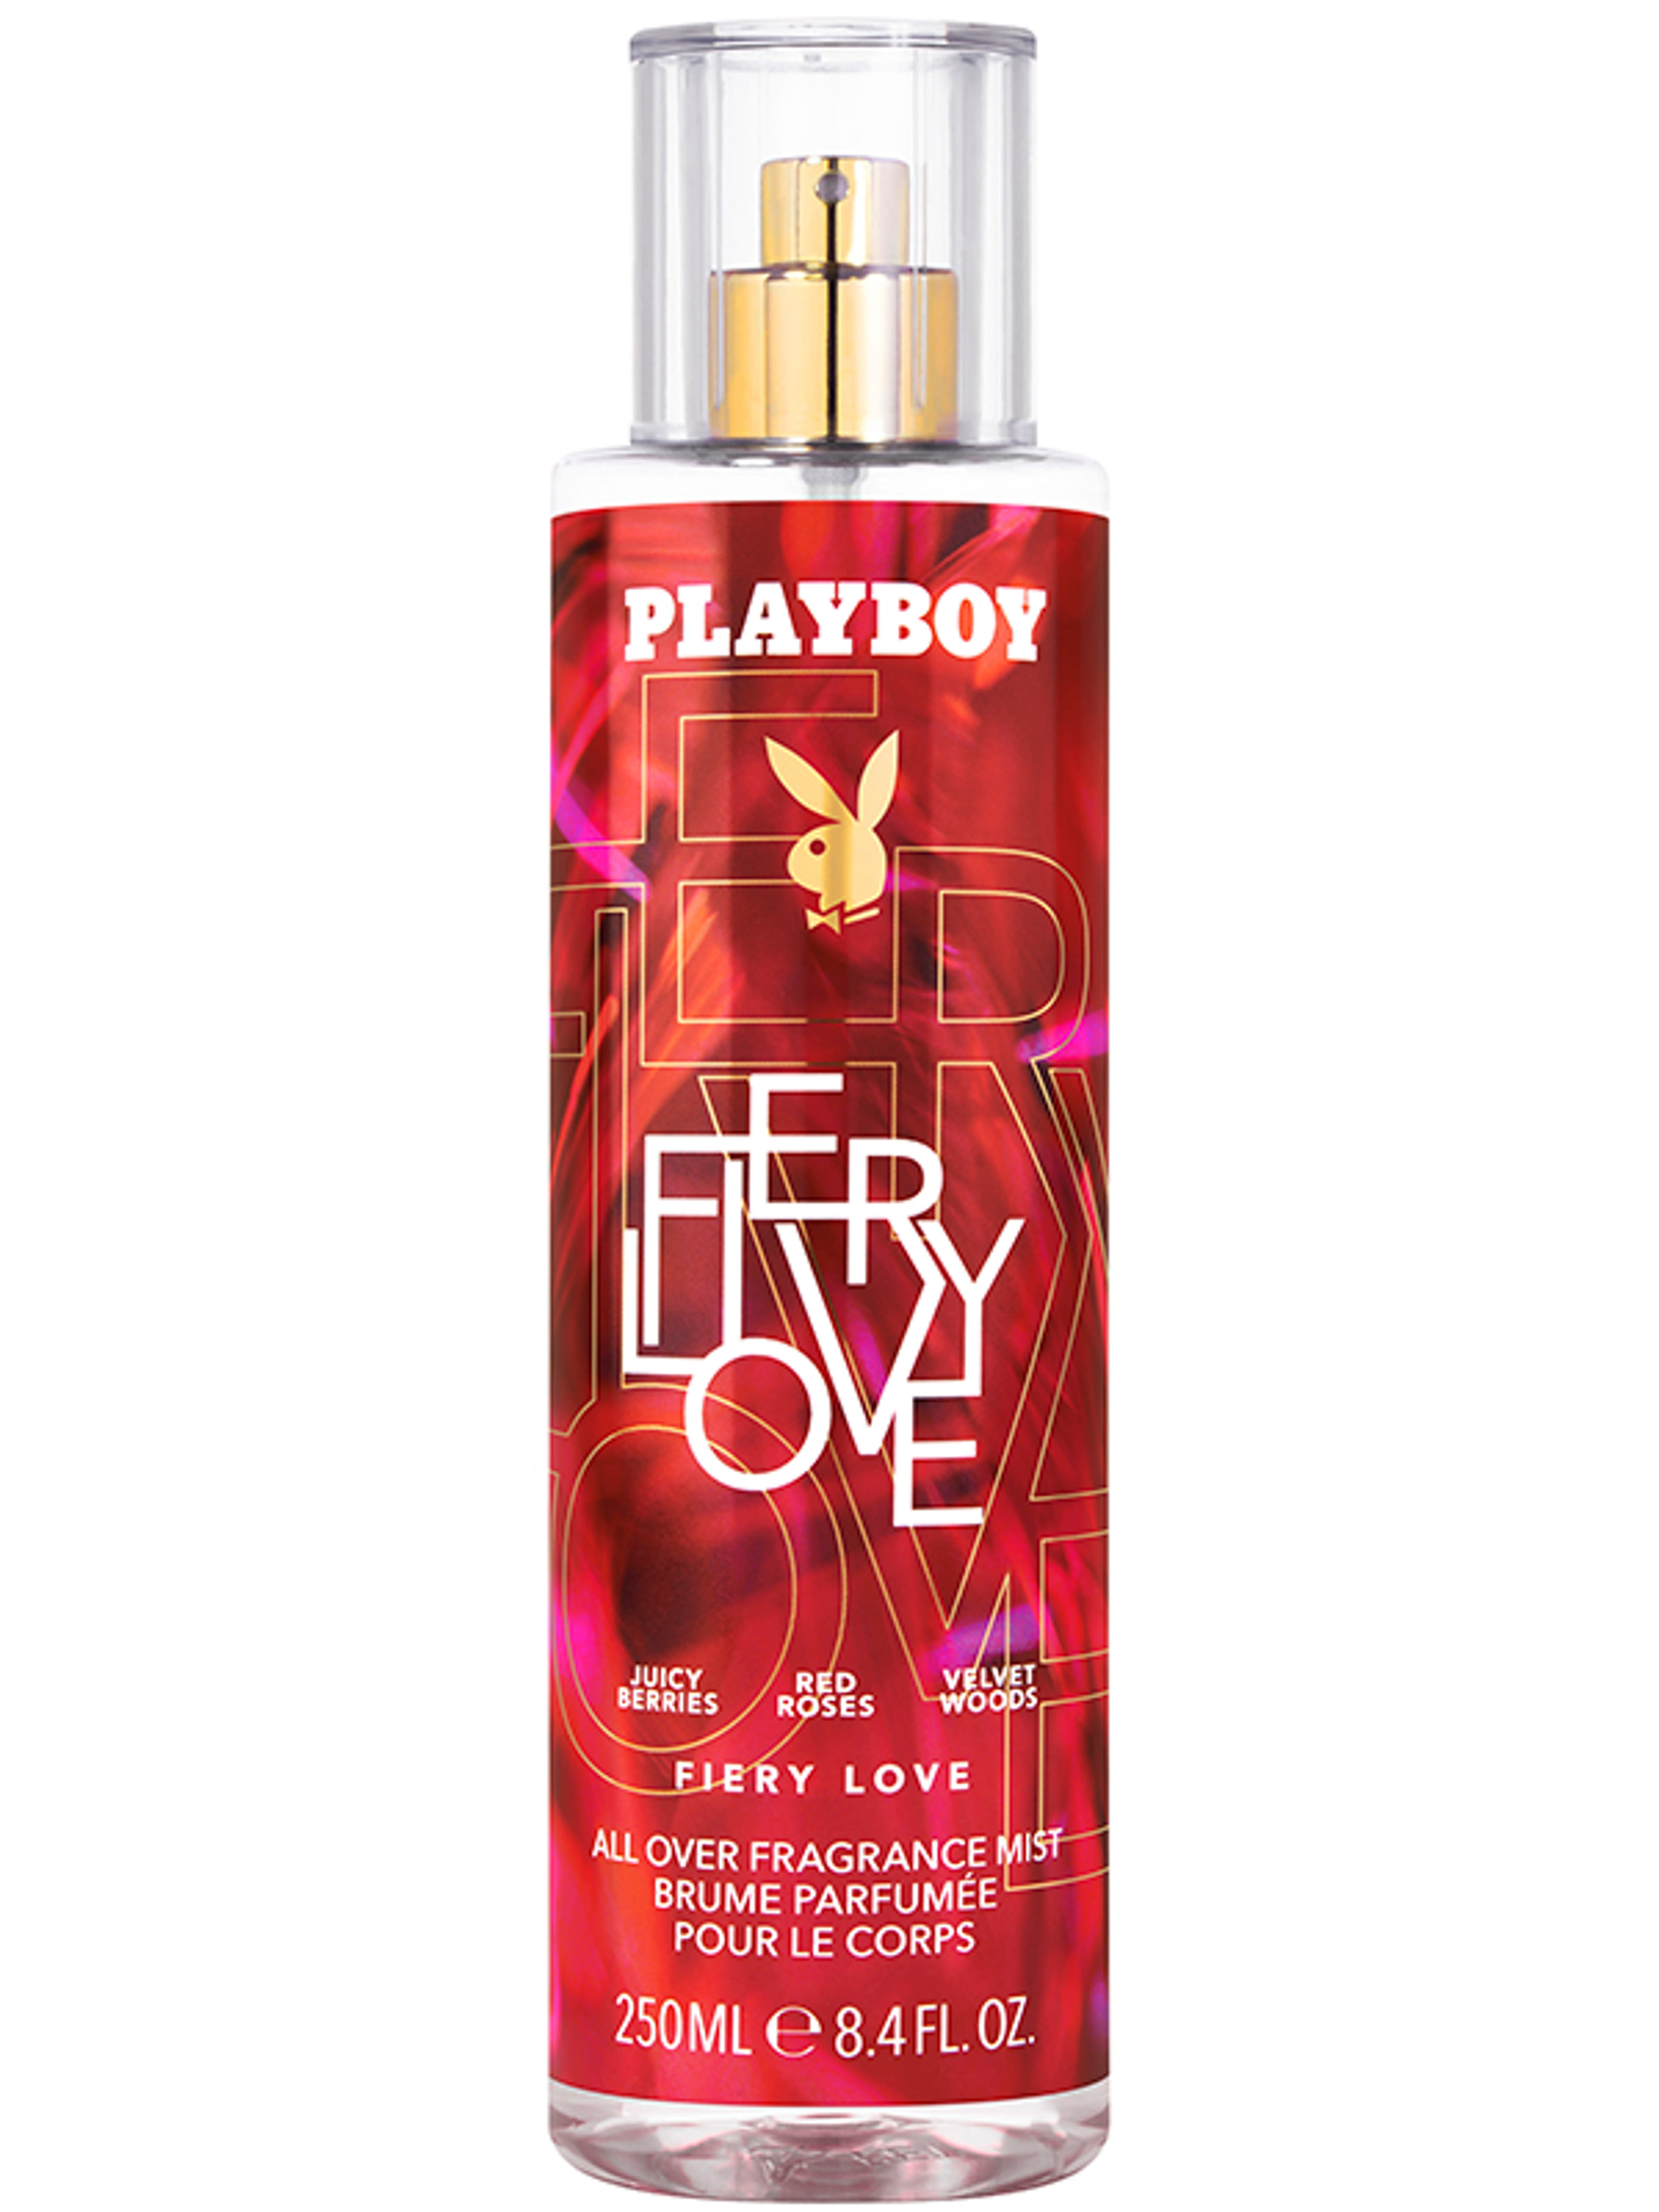 Playboy Fiery Love body mist - 250 ml-1